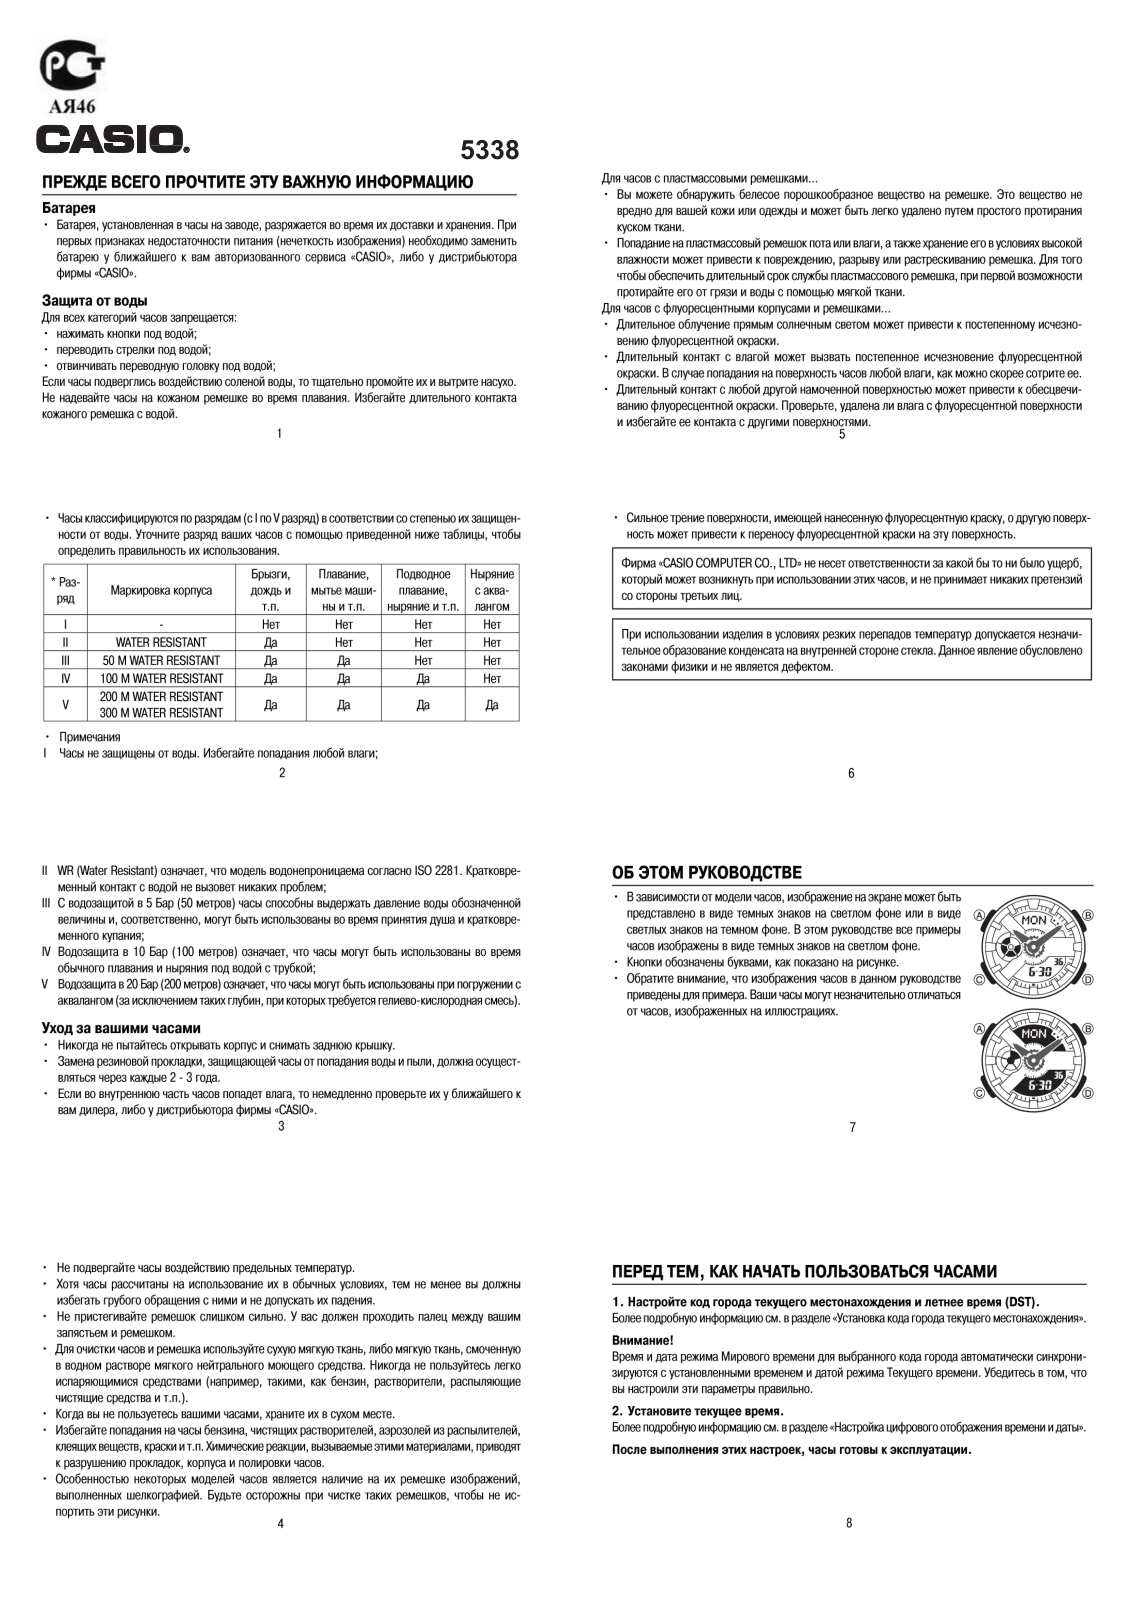 Casio BA-110PP-2A User Manual